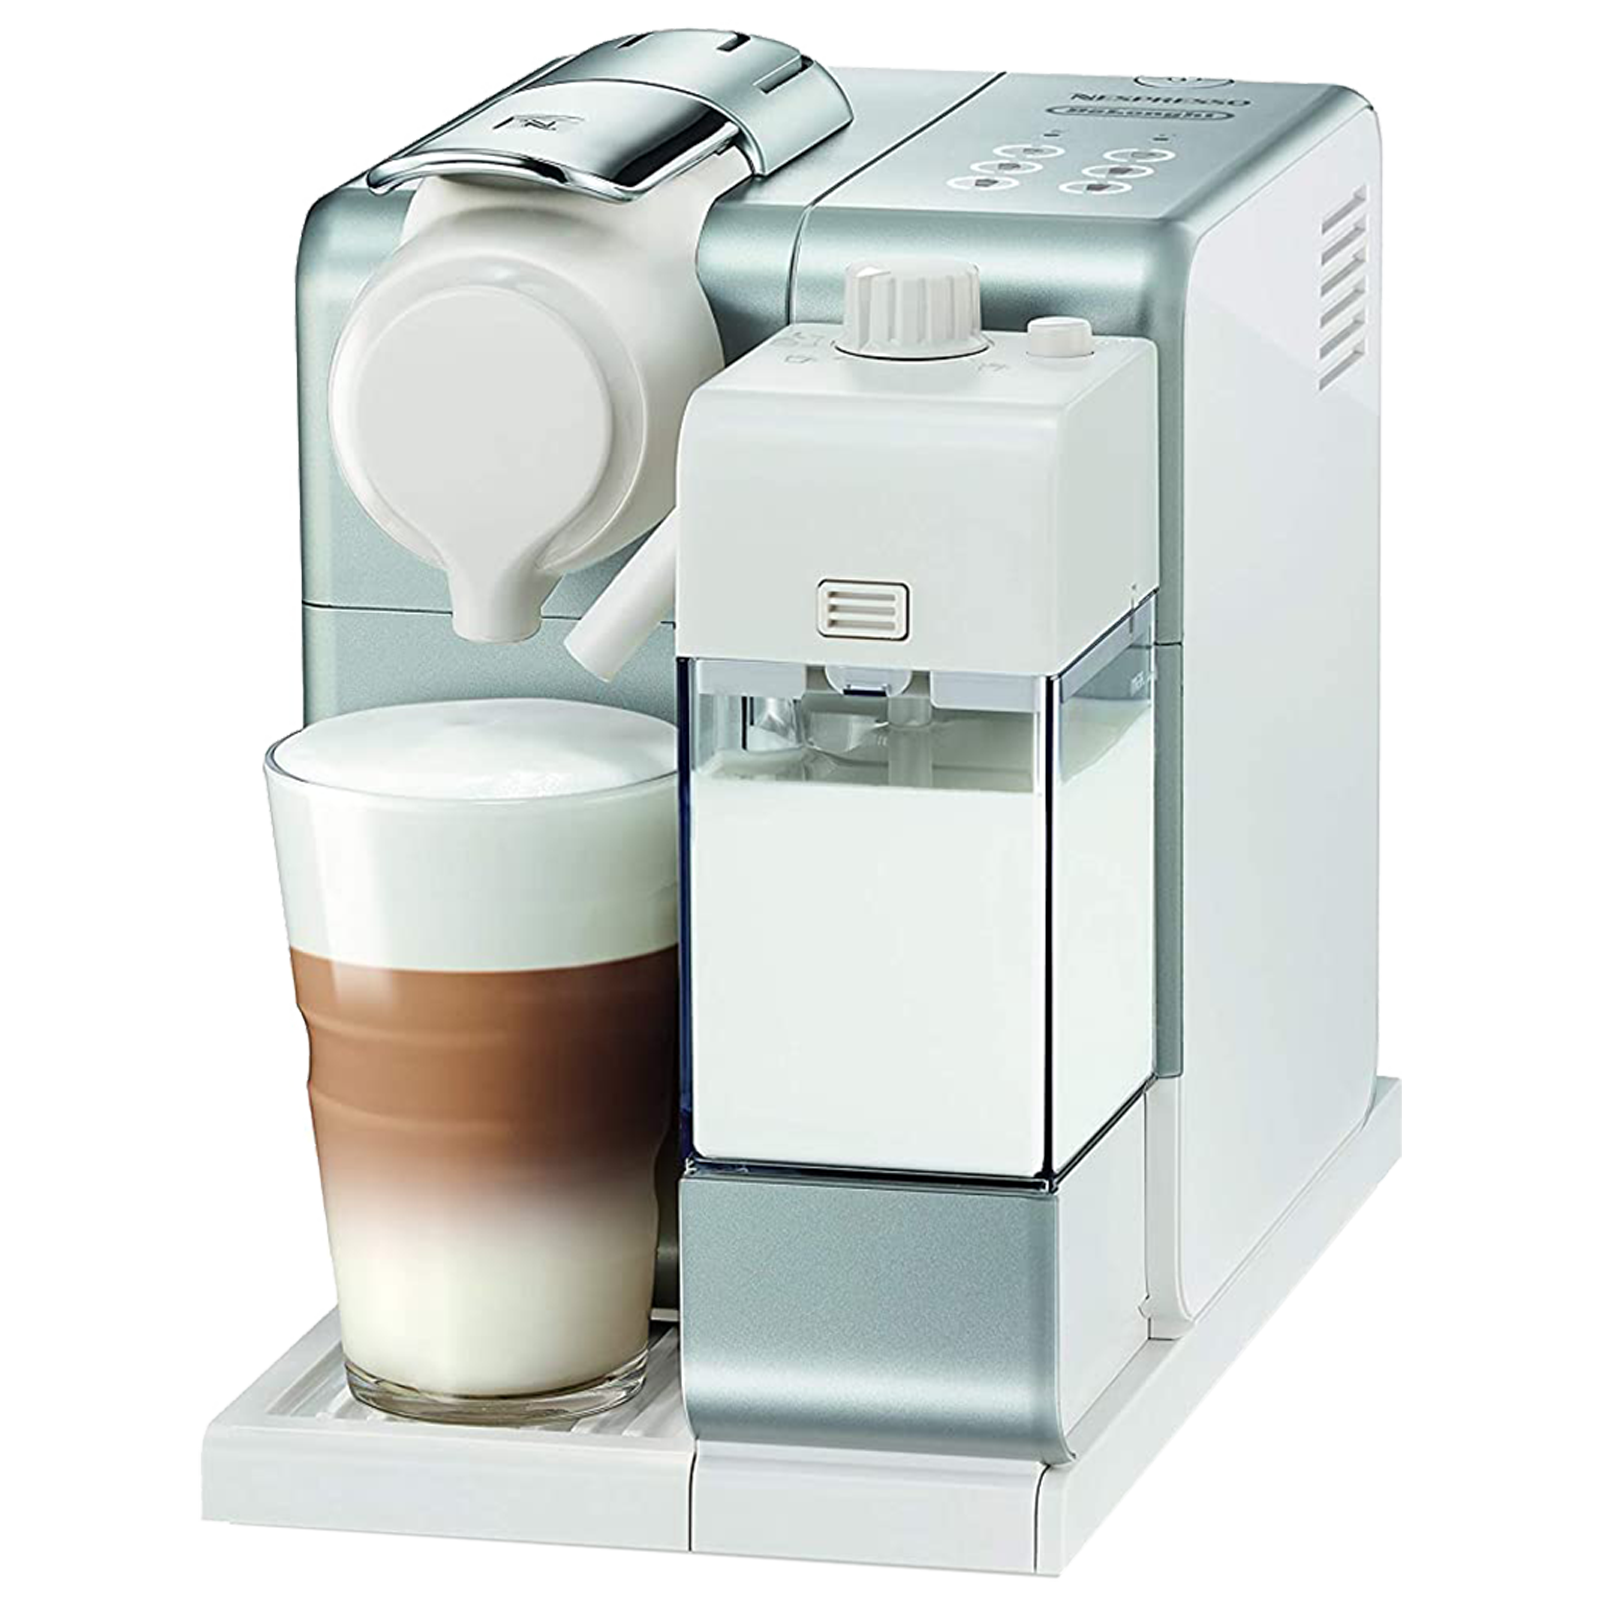 Nespresso Lattissima Touch Fully Automatic Coffee Maker (Makes Cappuccino/Macchiato/Espresso/Lungo/Milk, 40 Sec Heat-up Time, EN560, Black)_1